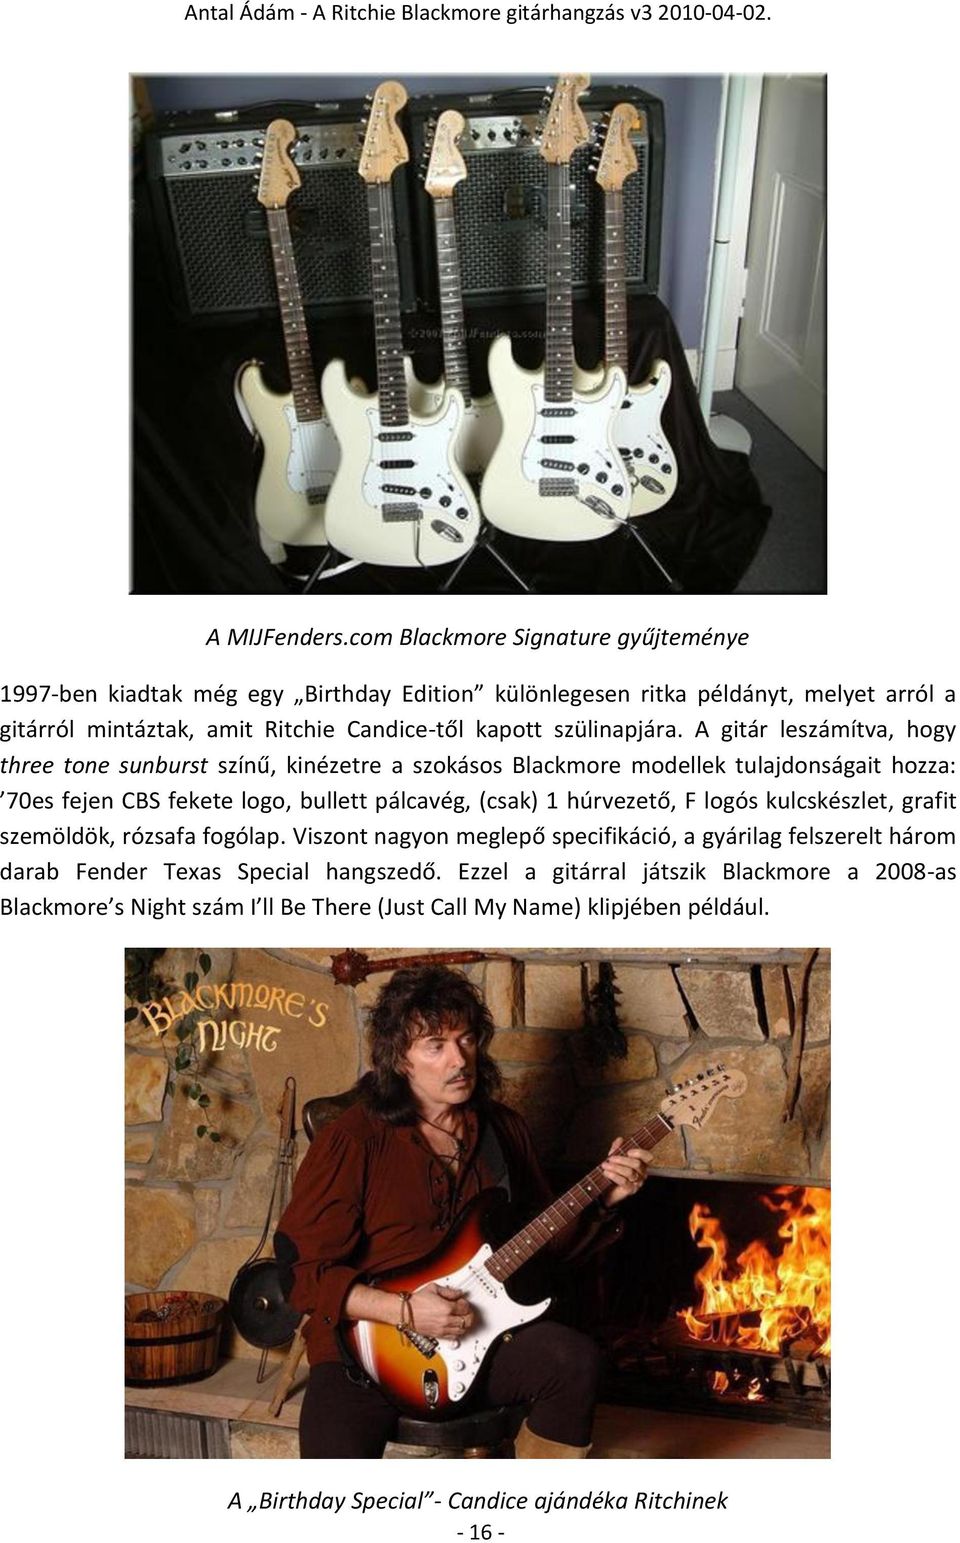 A Ritchie Blackmore gitárhangzás - PDF Ingyenes letöltés